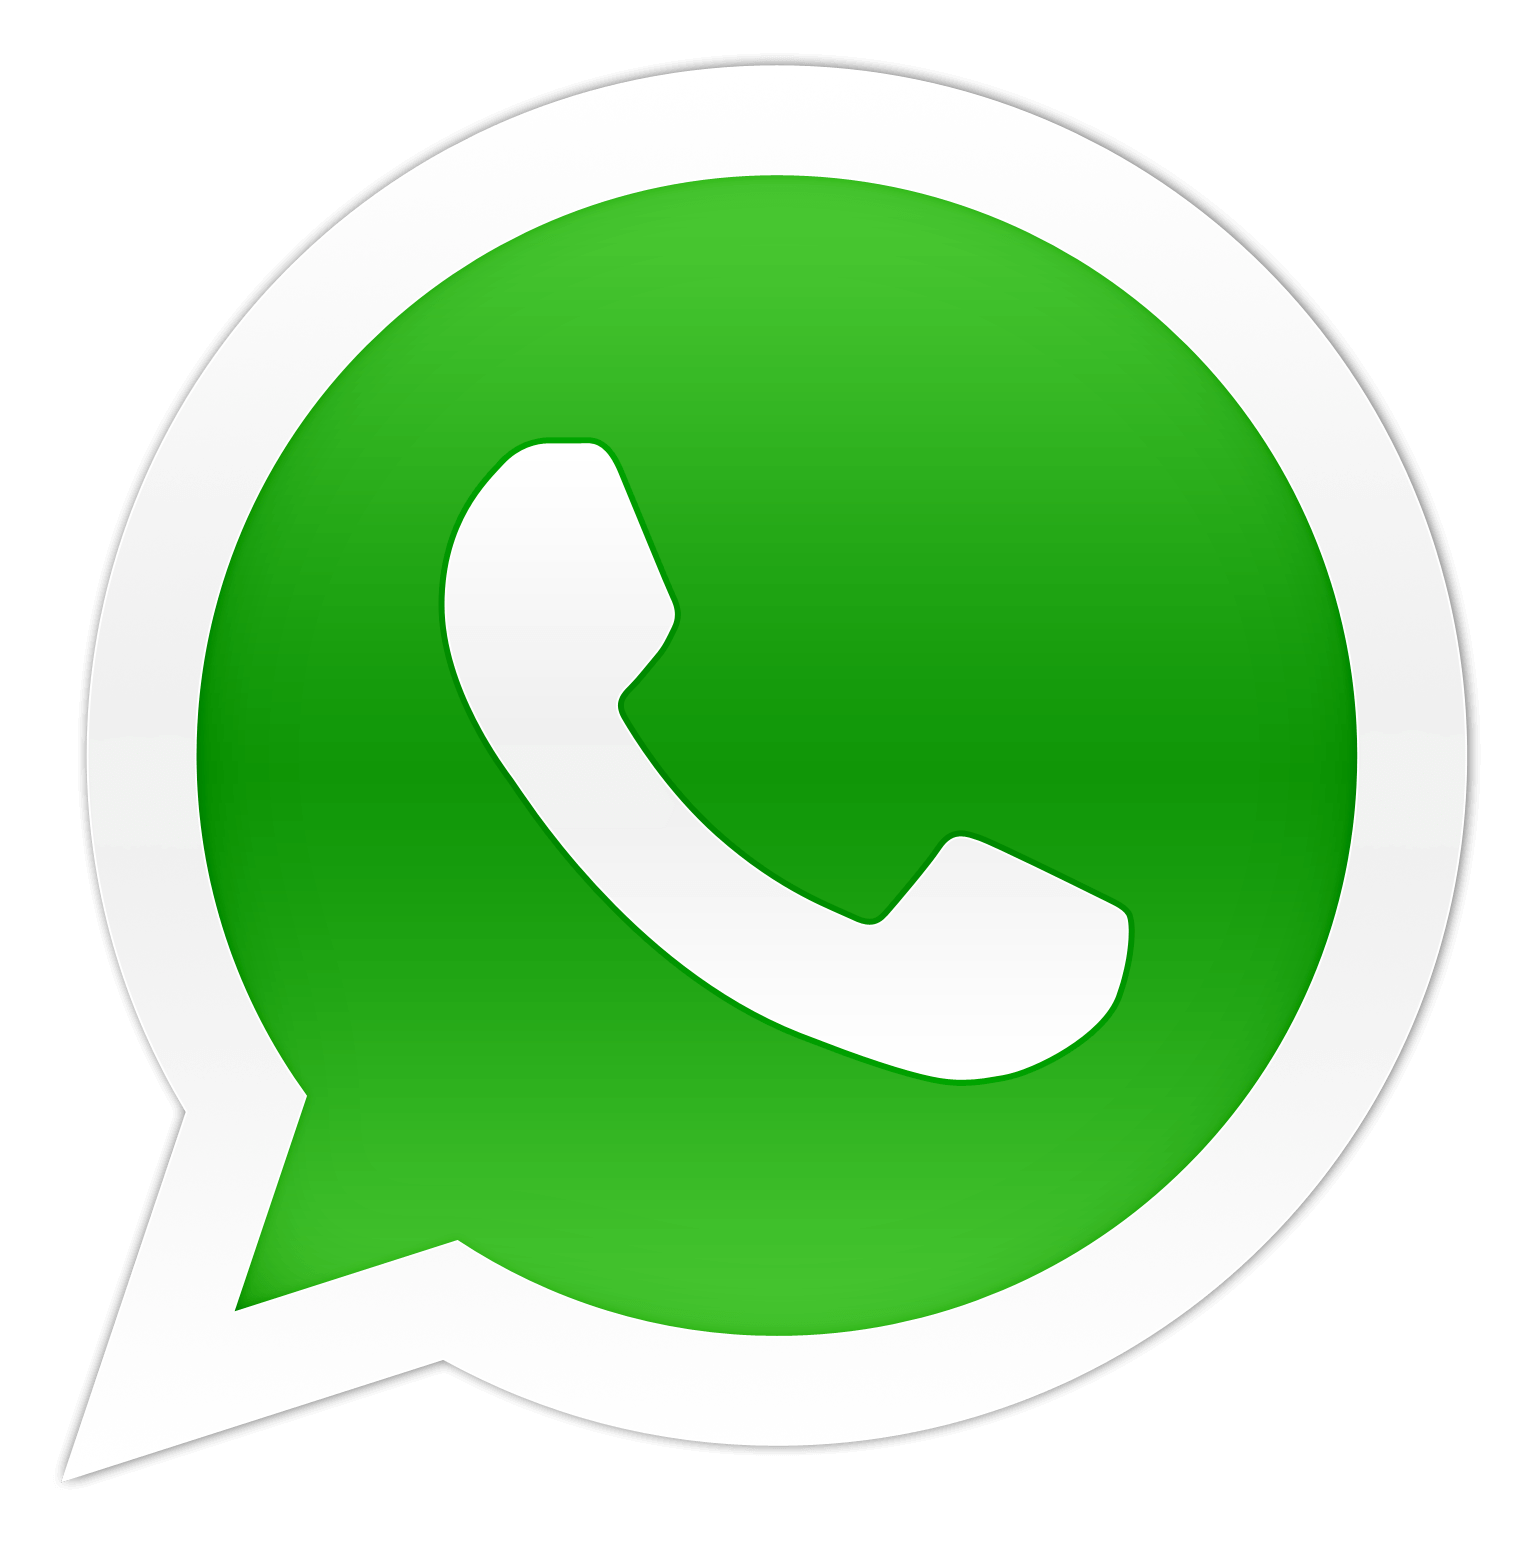 Fale no nosso whatsapp pelo (11) 93040.9198